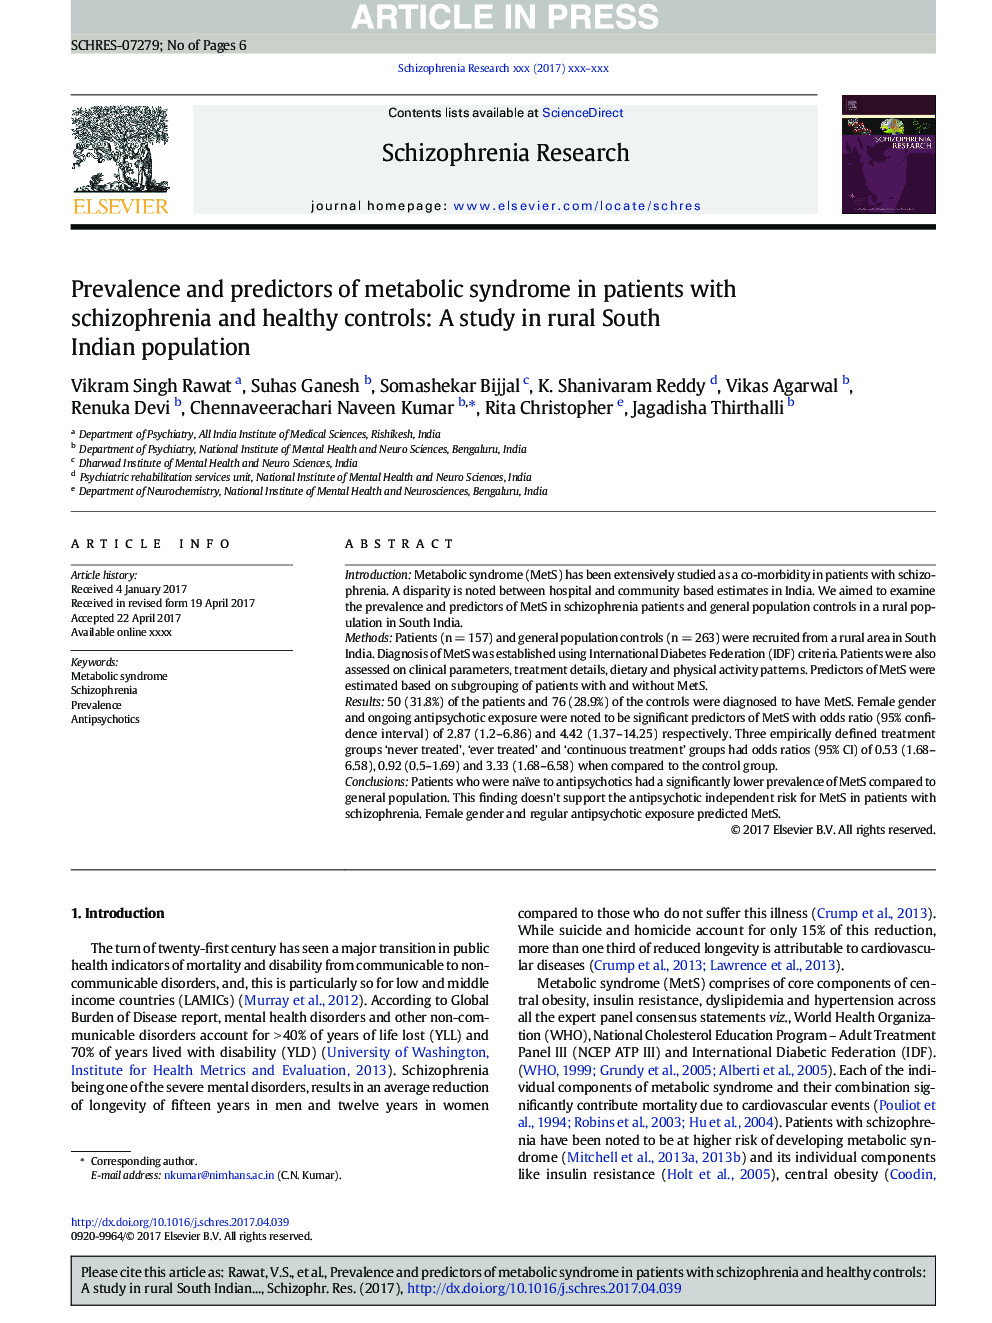 شیوع و پیش بینی کننده سندرم متابولیک در بیماران مبتلا به اسکیزوفرنیا و کنترل سالم: مطالعه در جمعیت روستایی جنوب هند 